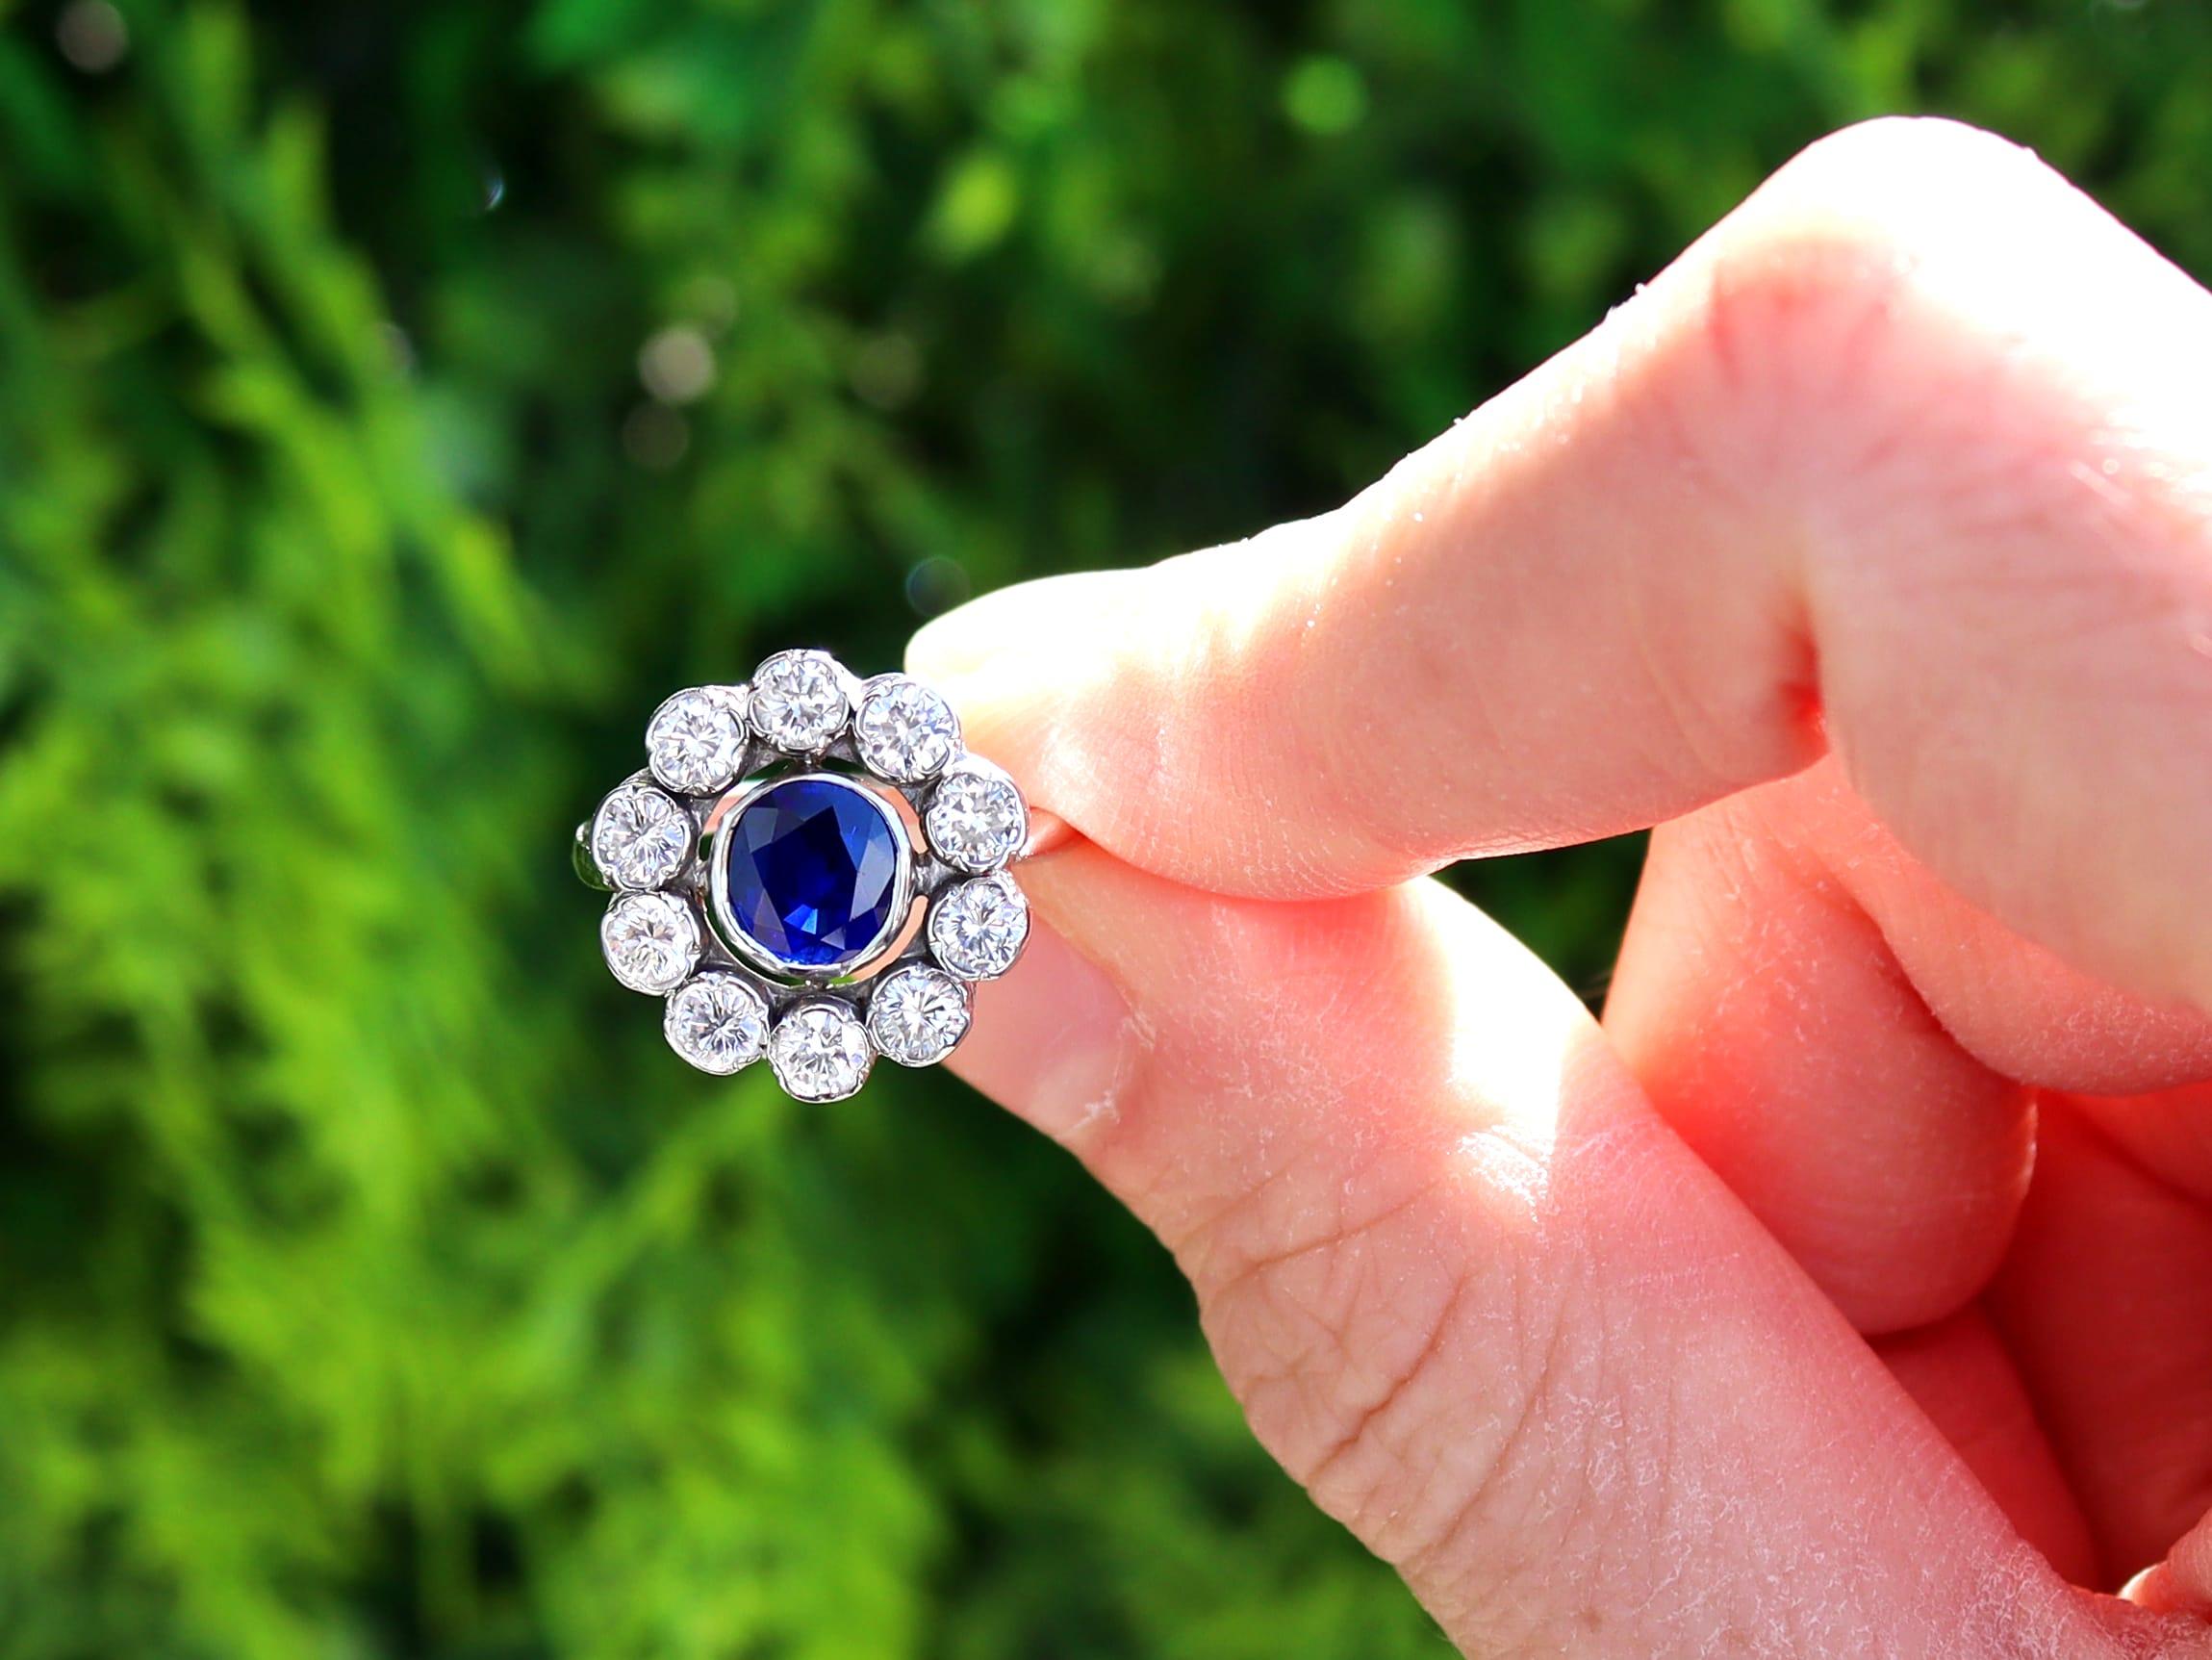 Ein atemberaubender, feiner und beeindruckender Ring aus 18 Karat Weißgold mit einem natürlichen blauen Saphir von 0,82 Karat und einem Diamanten von 0,65 Karat (insgesamt); Teil unserer Vintage-Saphir-Schmuckkollektionen.

Dieser atemberaubende,